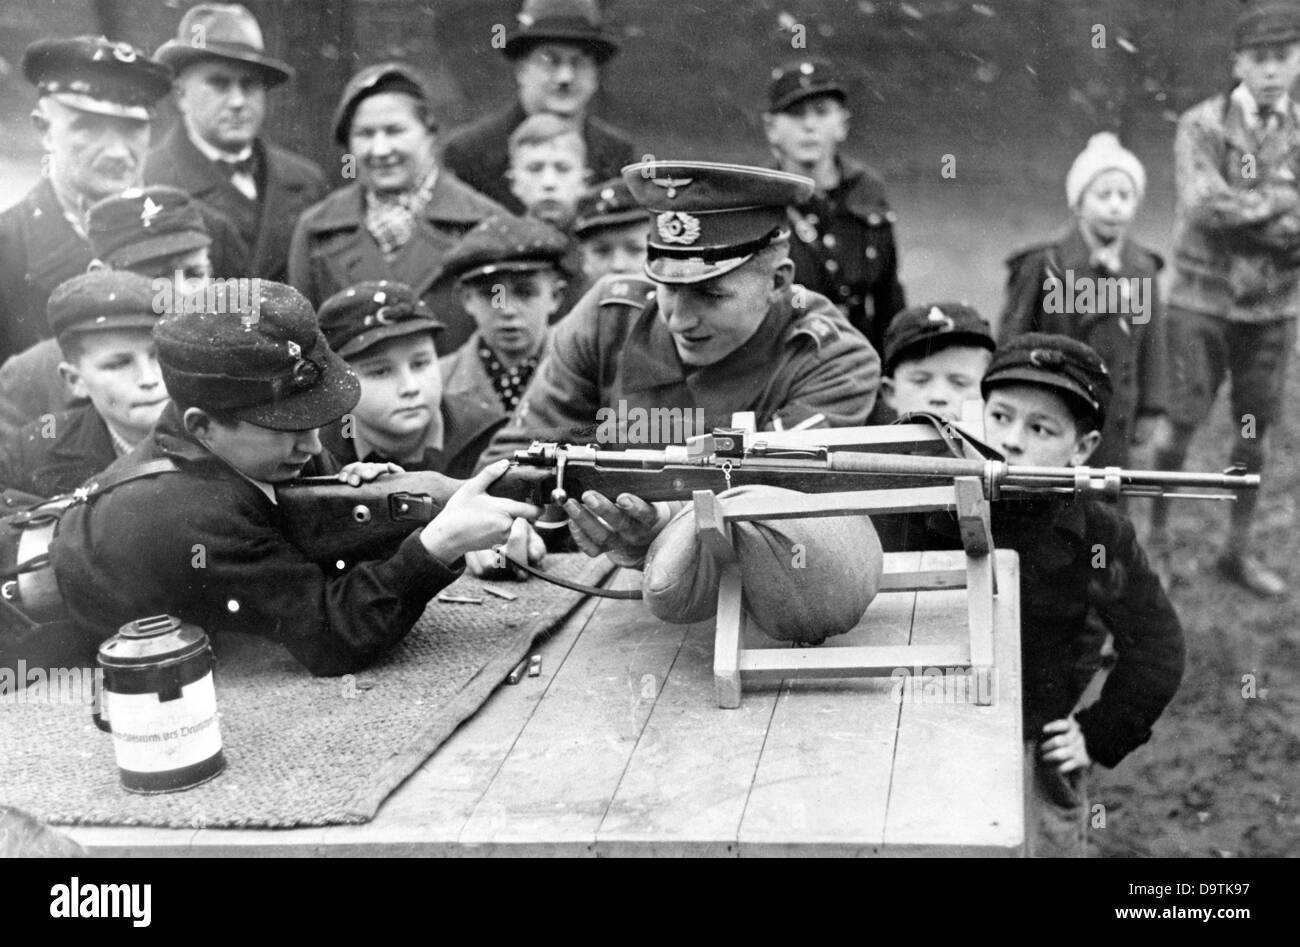 Hitler jeunes garçons de la Jeunesse allemande pendant la pratique de tir sous la supervision d'un membre de la Wehrmacht allemande. Date et lieu inconnus. Fotoarchiv für Zeitgeschichte Banque D'Images